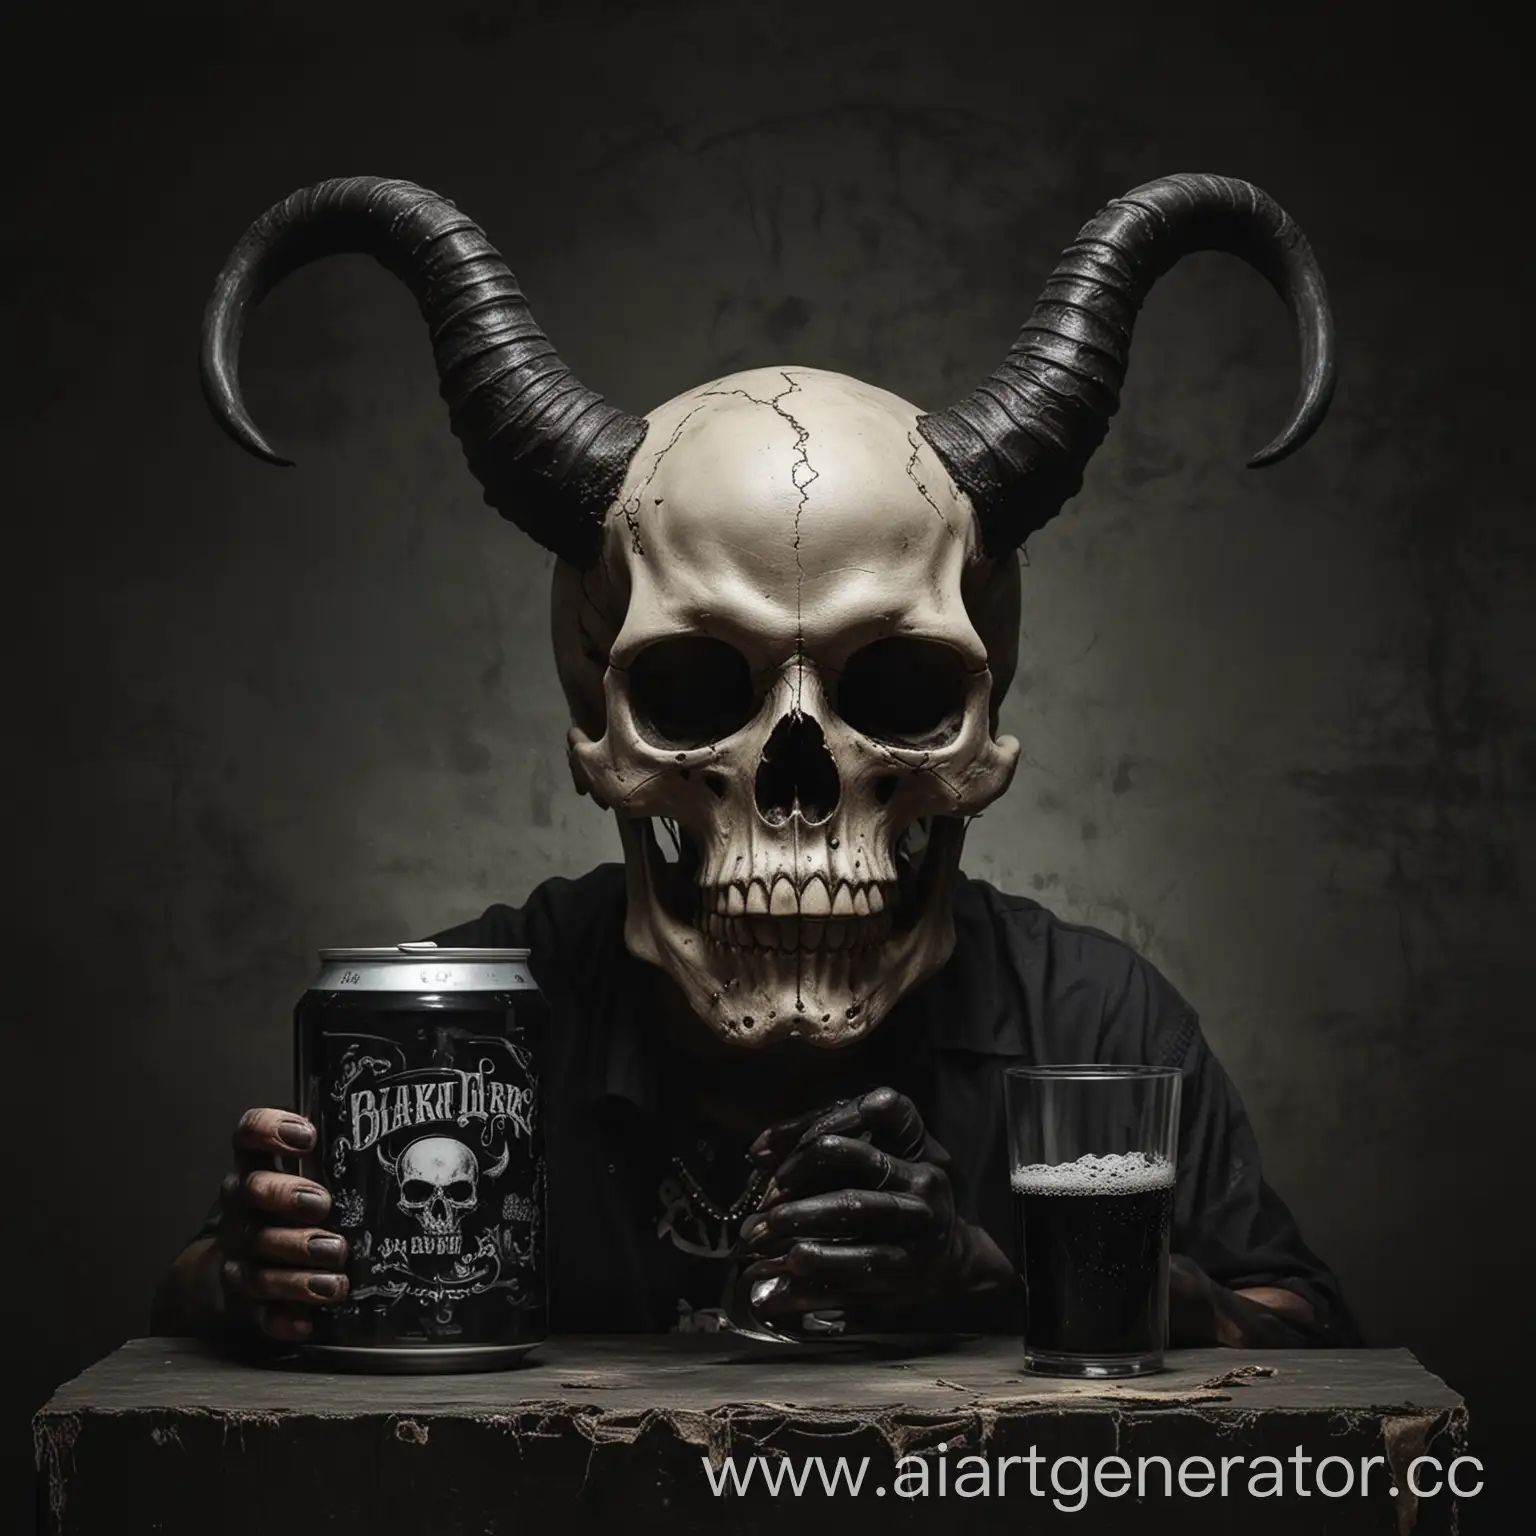 череп с рогами,черное мрачный фон,в руках баночка пива черного цвета